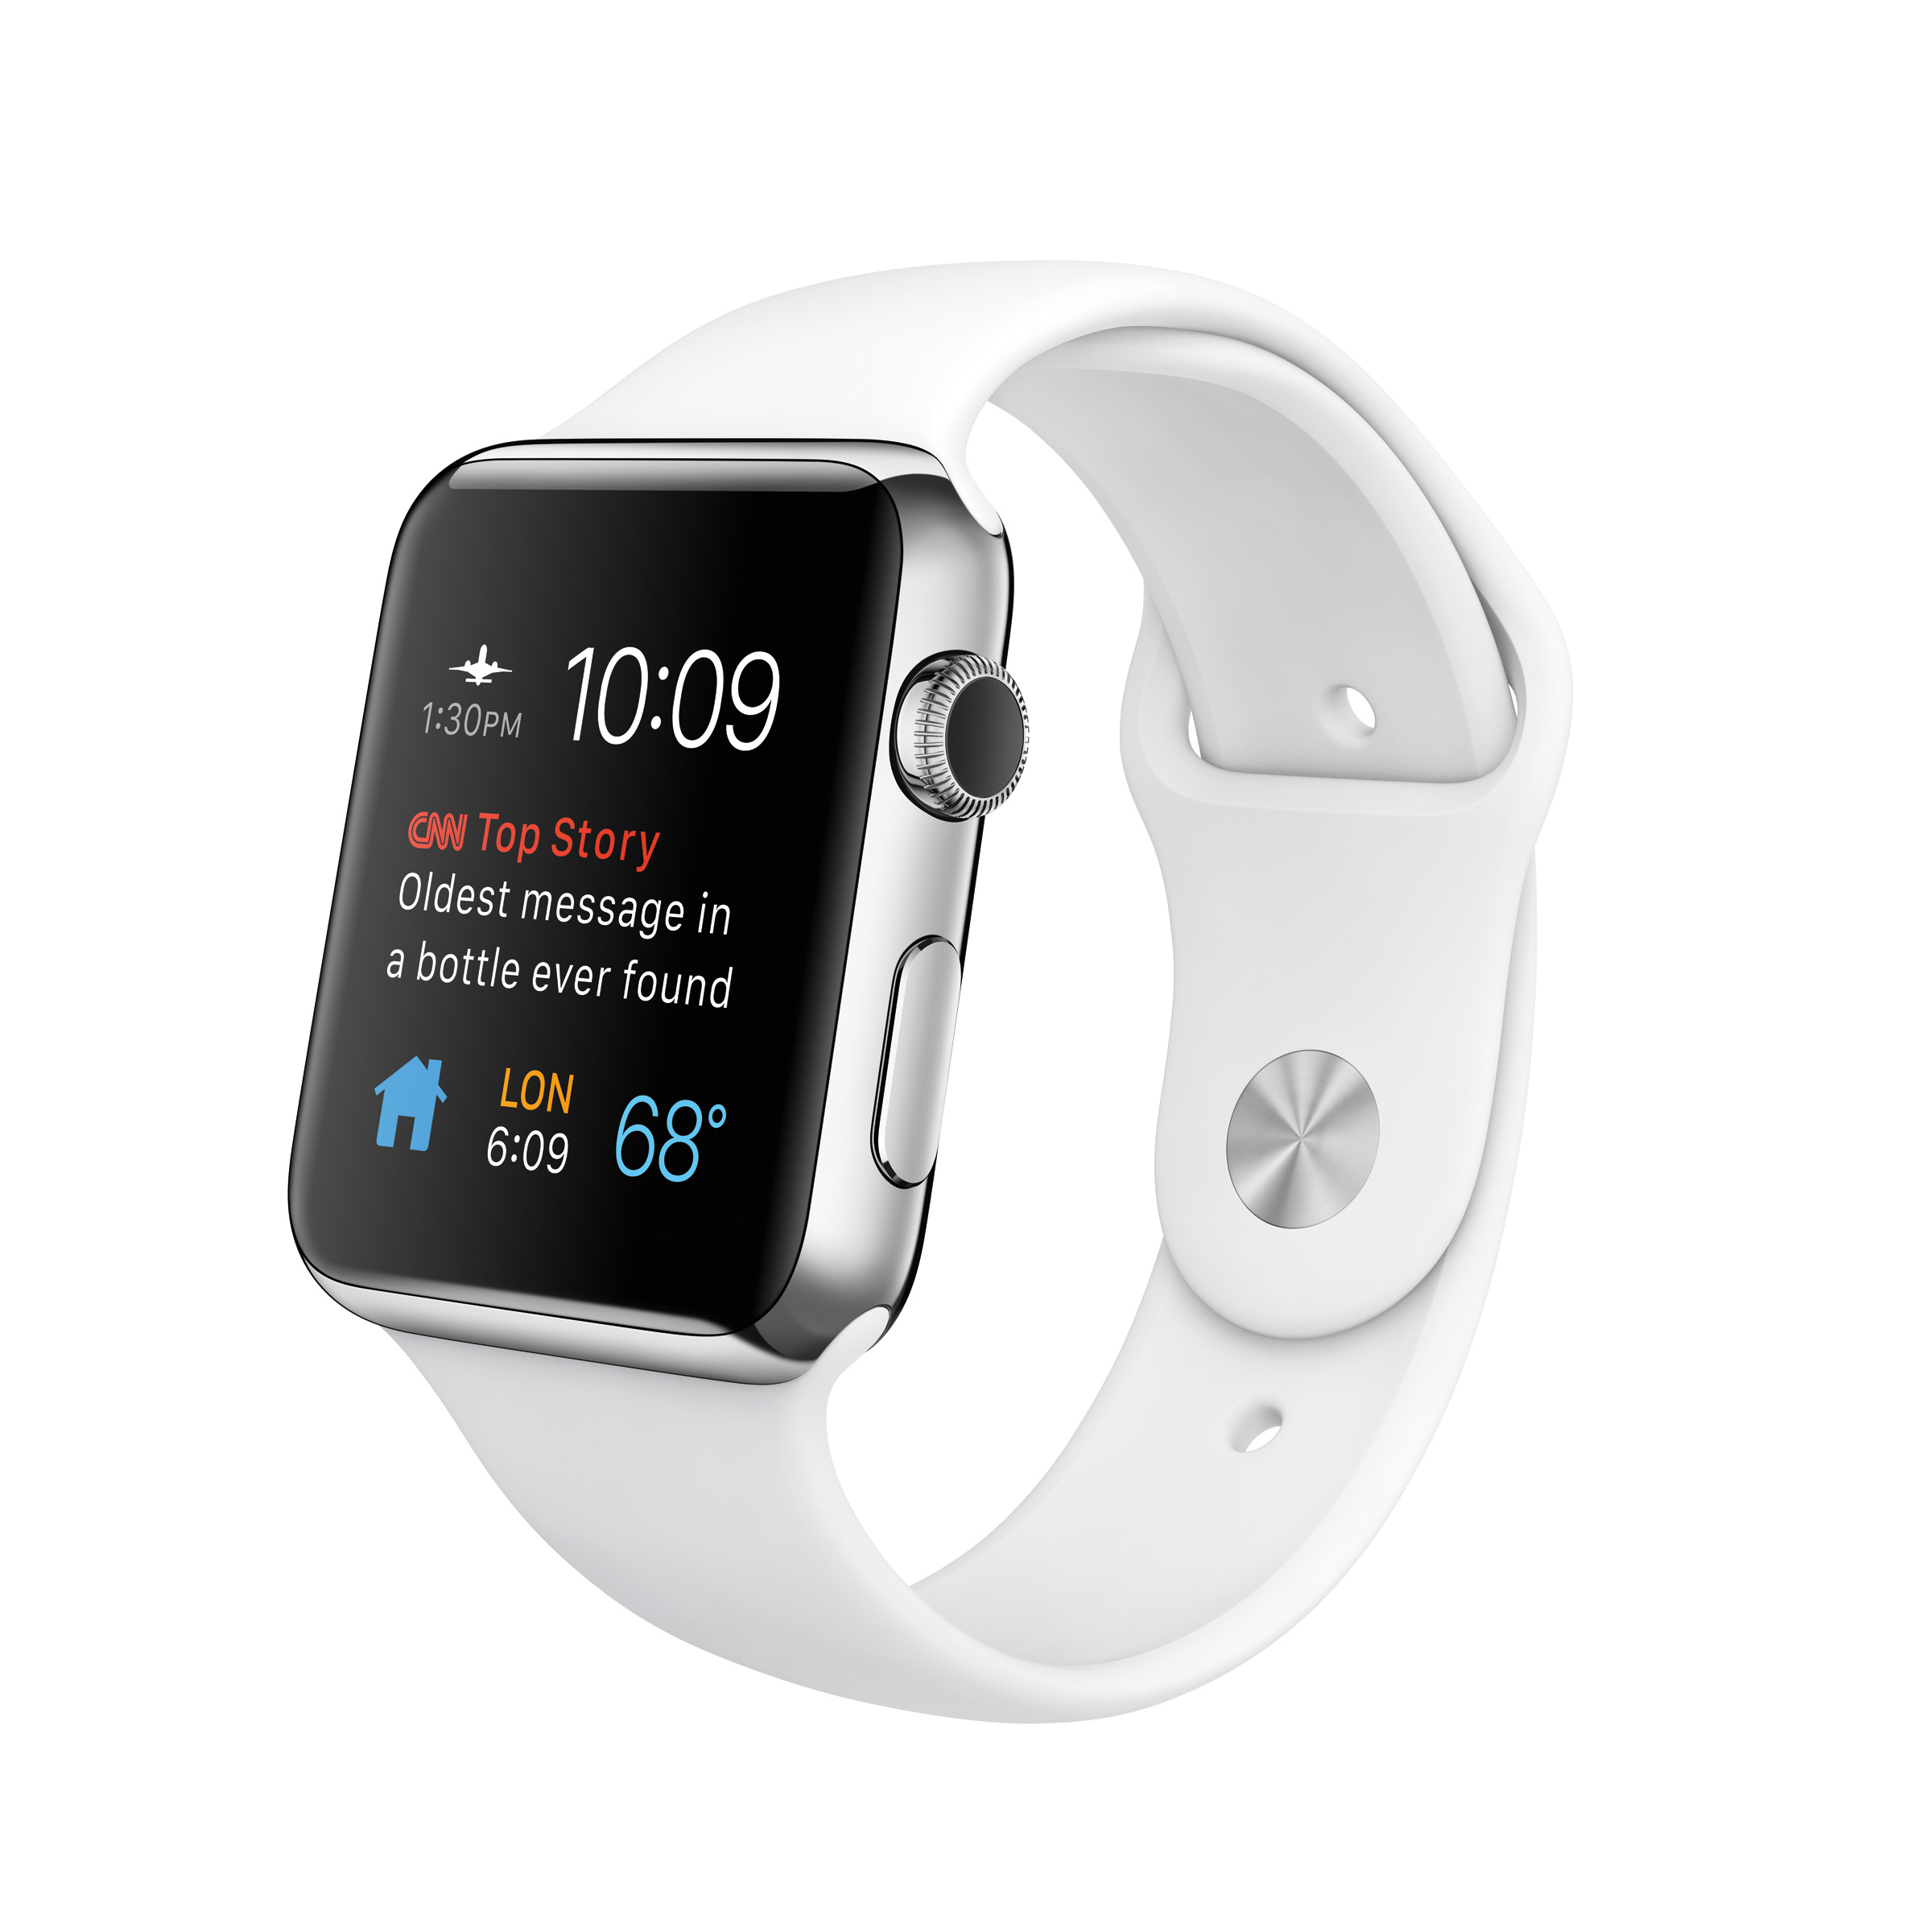 Galería Movilfonia - Apple presenta el Apple Watch Hermès, el watchOS 2